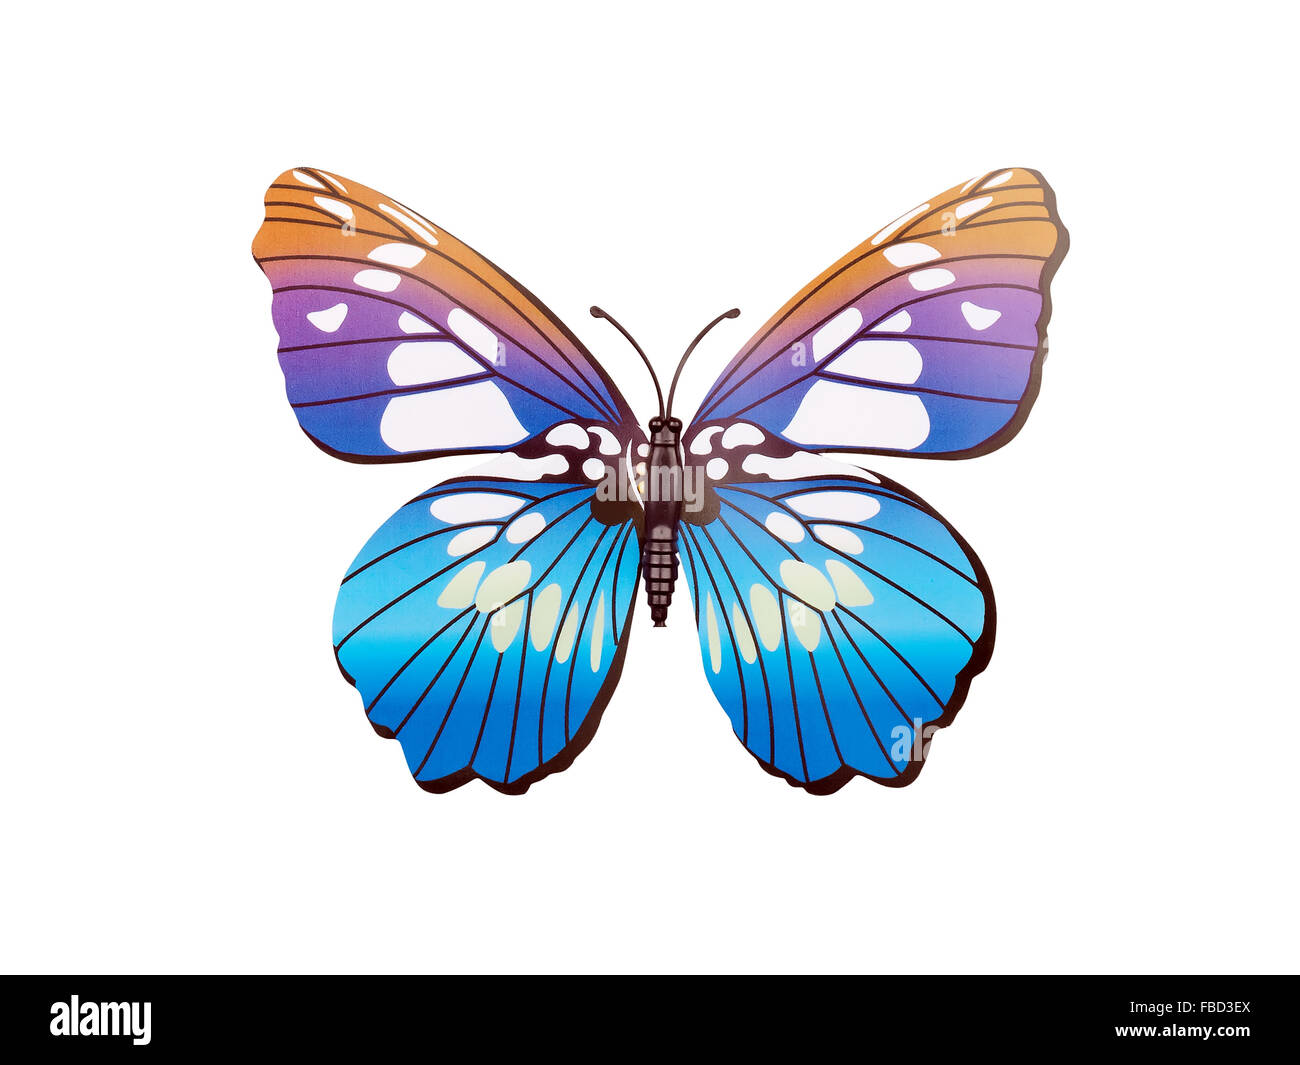 Sticker mural papillon isolé sur fond blanc Banque D'Images